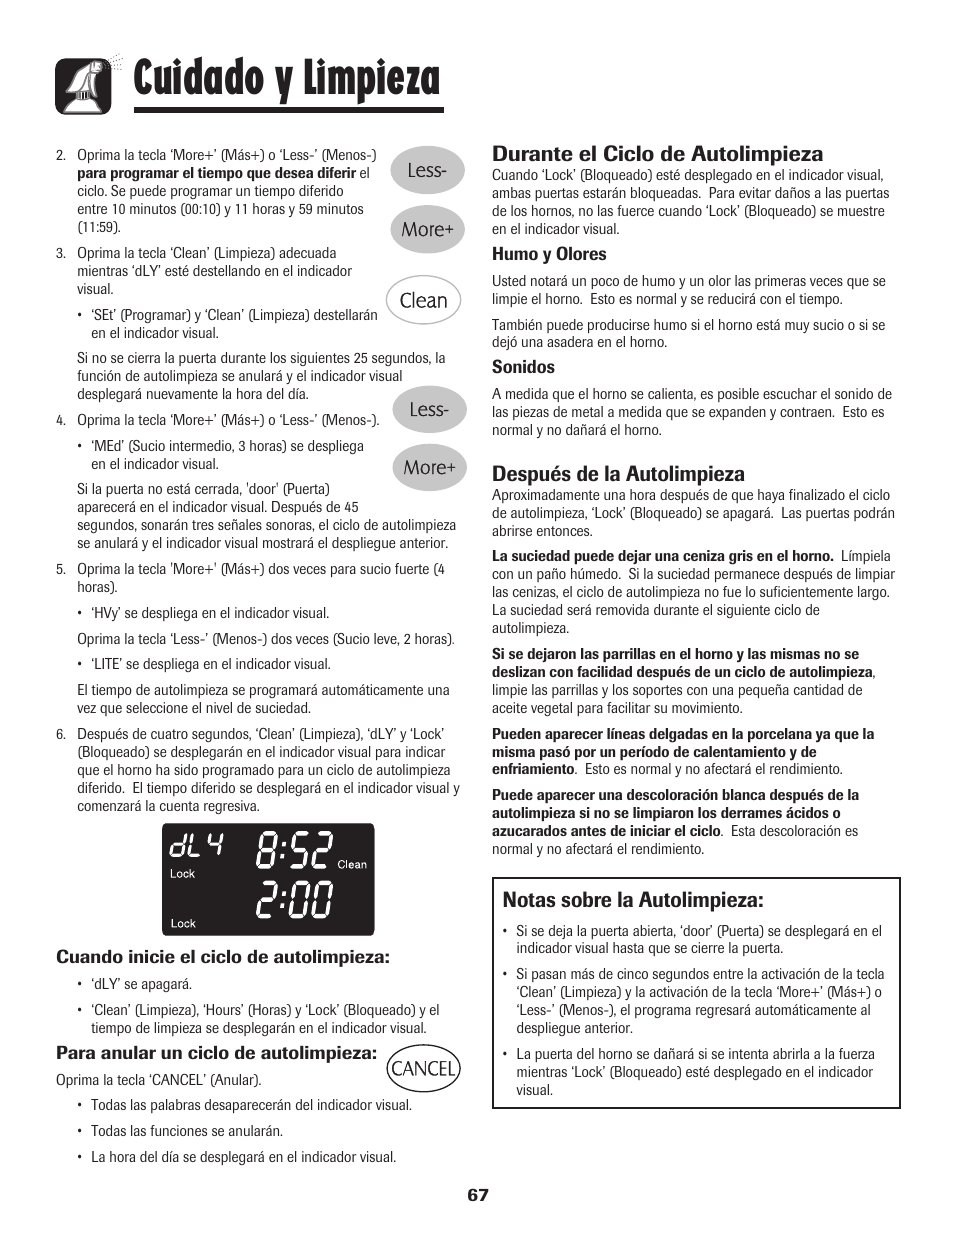 Cuidado y limpieza, Notas sobre la autolimpieza, Durante el ciclo de autolimpieza | Después de la autolimpieza | Maytag MGR6751BDW User Manual | Page 68 / 76